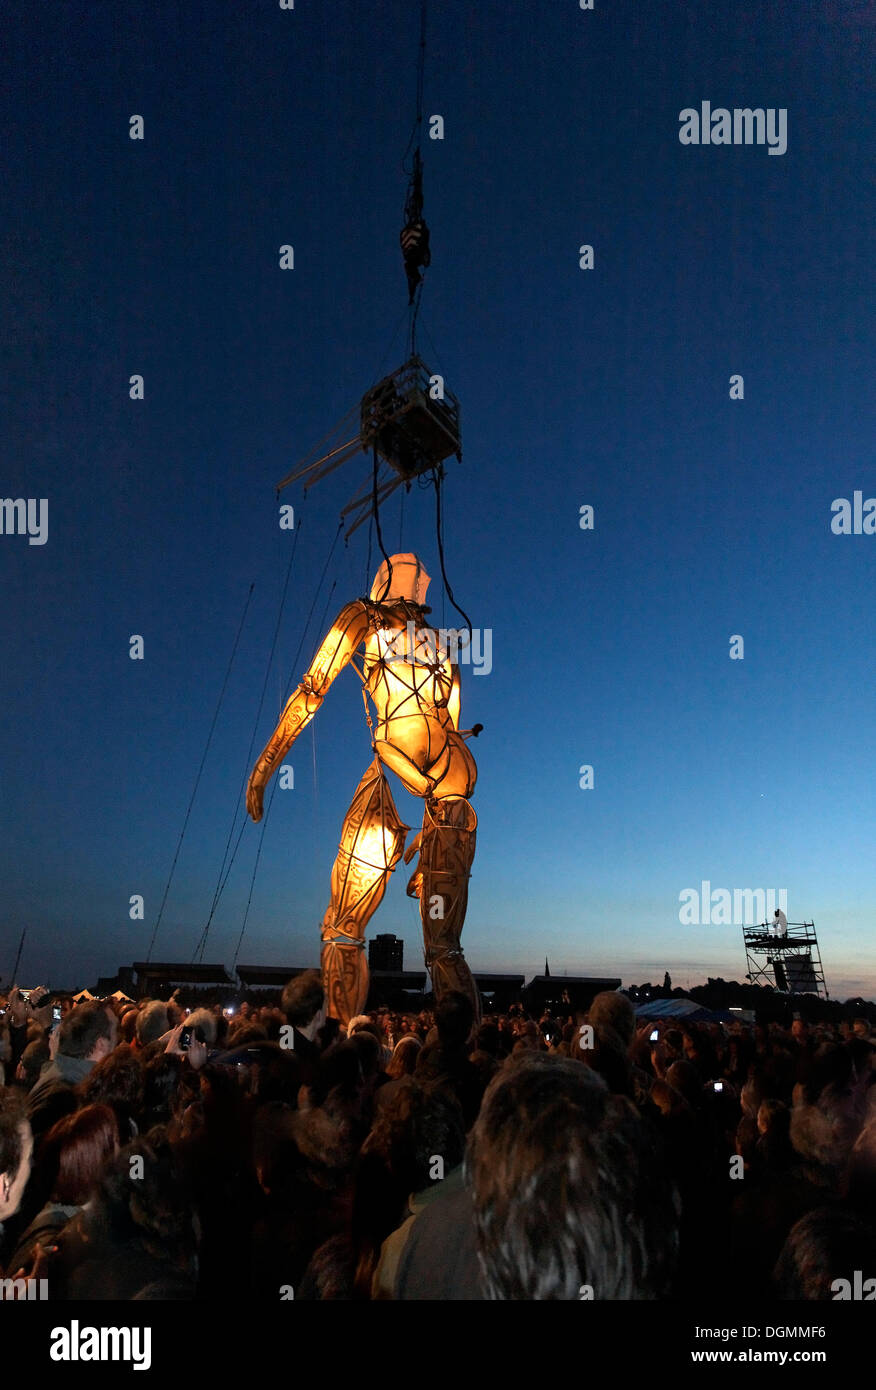 Riesige beleuchtete Figur an Seilen zu Fuß durch das Publikum, globale Rheingold, Open-Air-Theater von La Fura Dels Baus Stockfoto